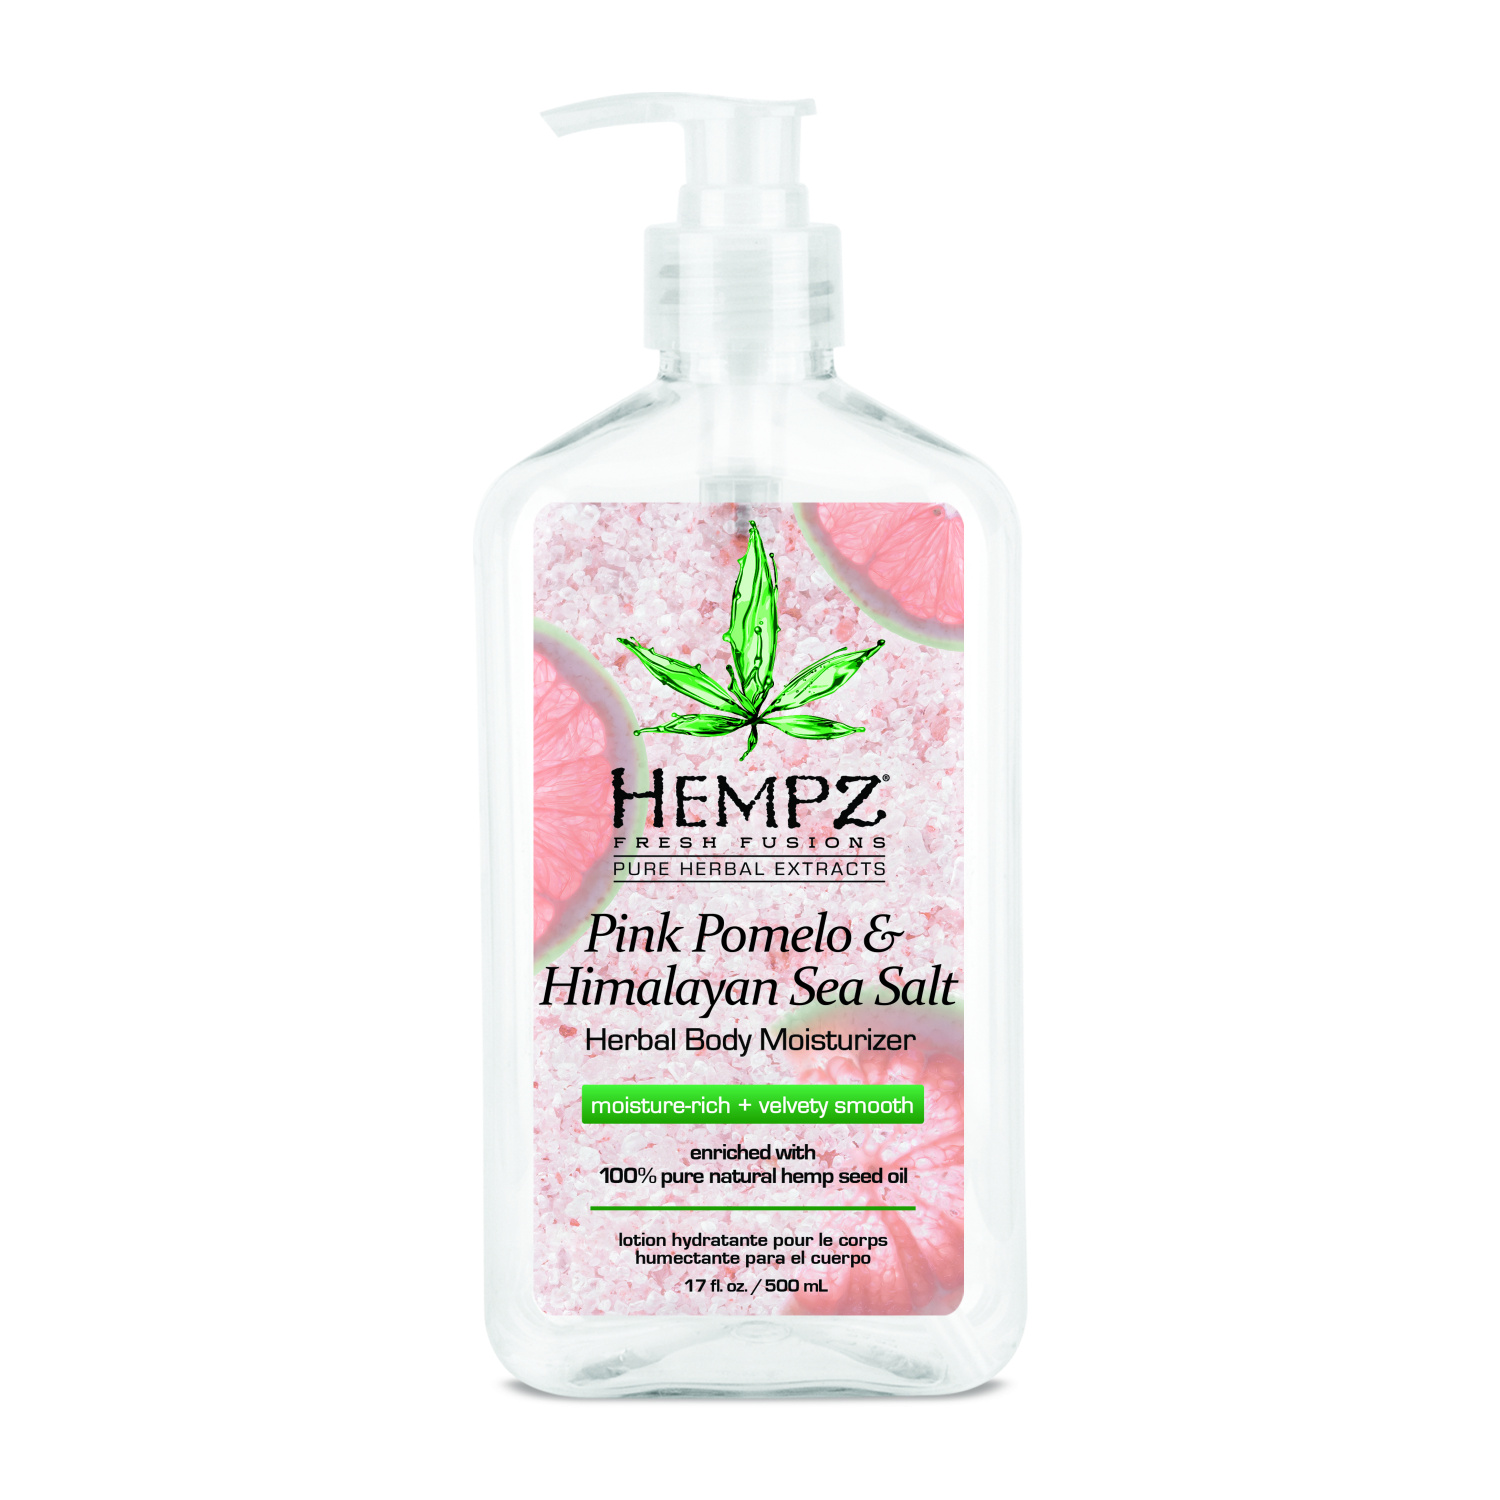 Hempz Pink Pomelo & Himalayan Sea Salt Herbal Body Moisturizer 500ml. - интернет-магазин профессиональной косметики Spadream, изображение 26880